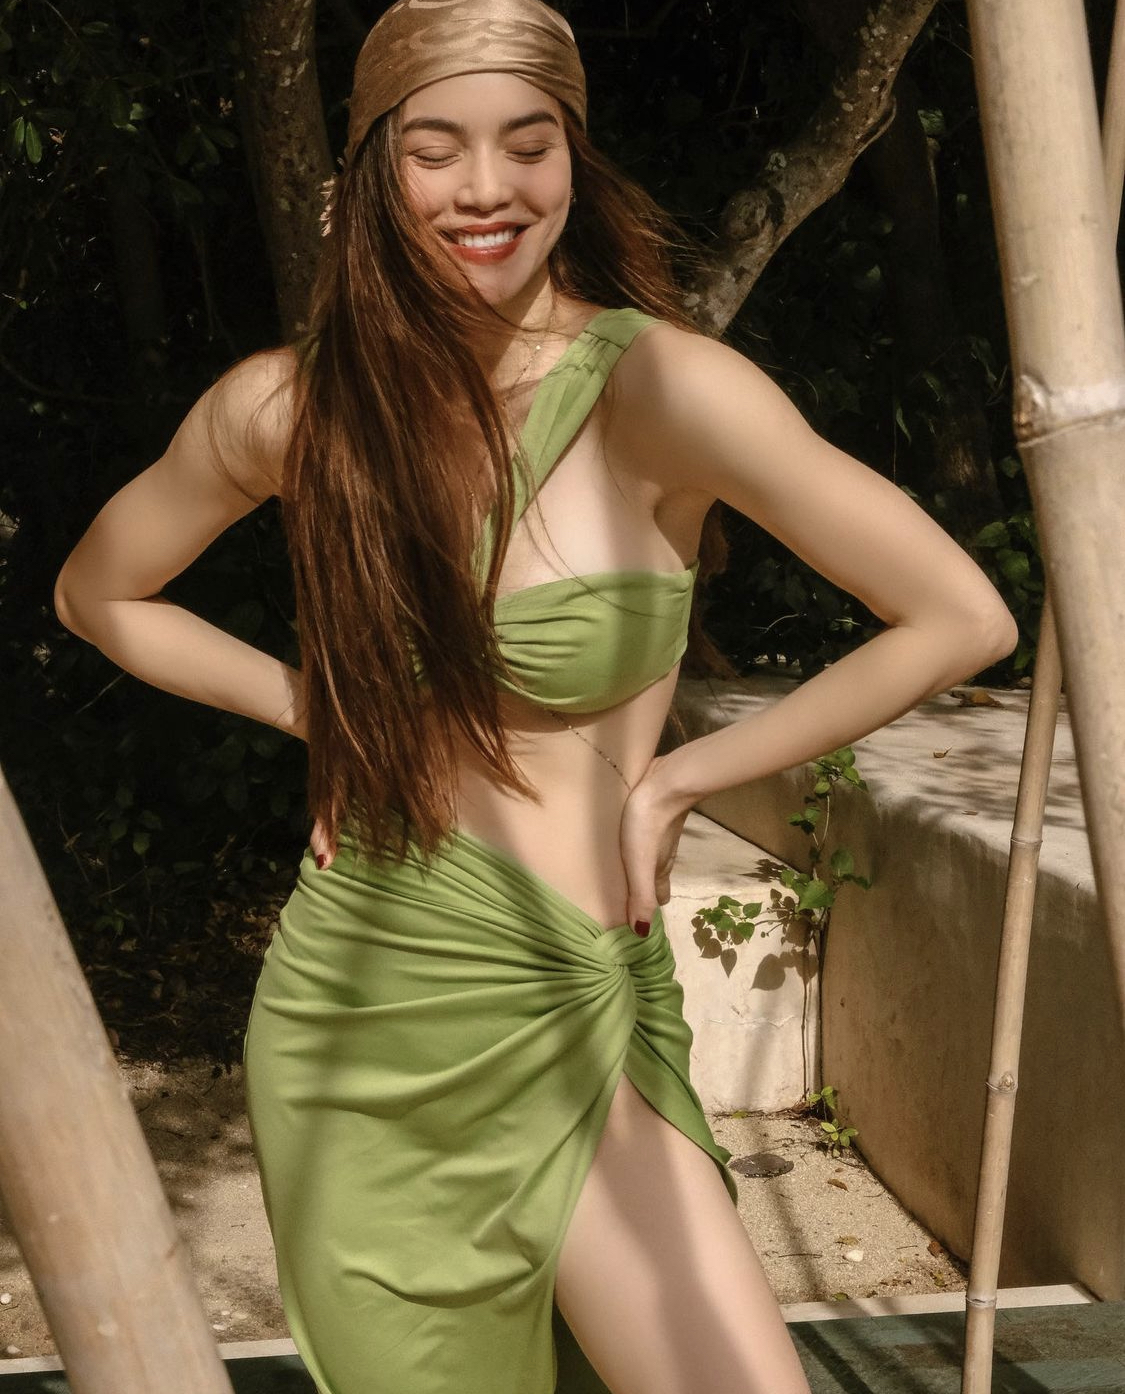 Hồ Ngọc Hà diện váy xẻ tà cùng áo bra quyến rũ khi đi biển, thiết kế khoe trọn hình thể của nữ ca sĩ.